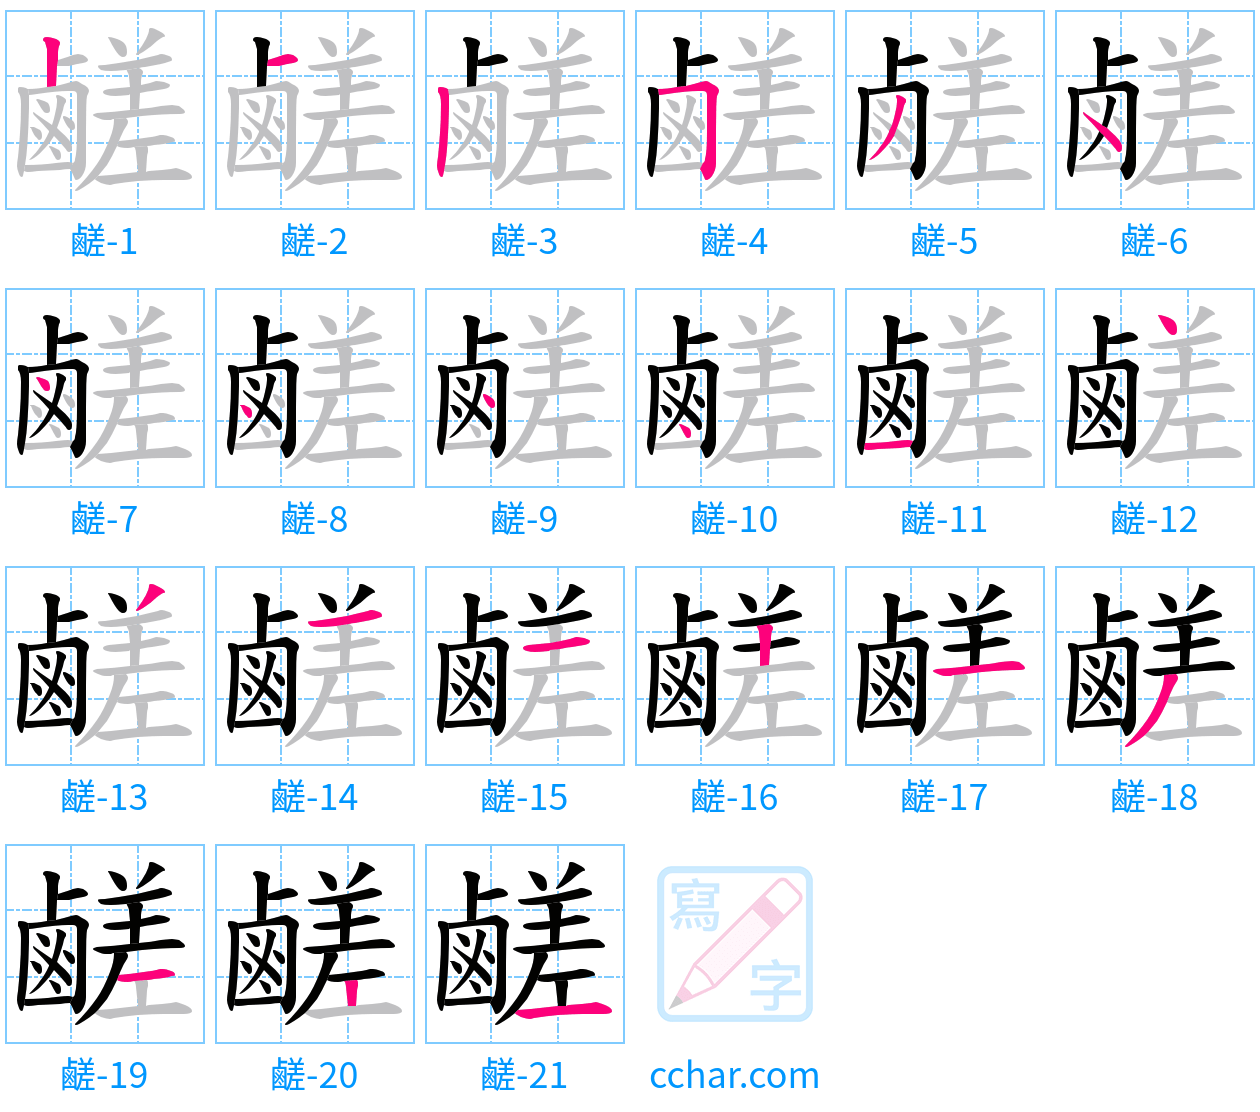 鹺 stroke order step-by-step diagram